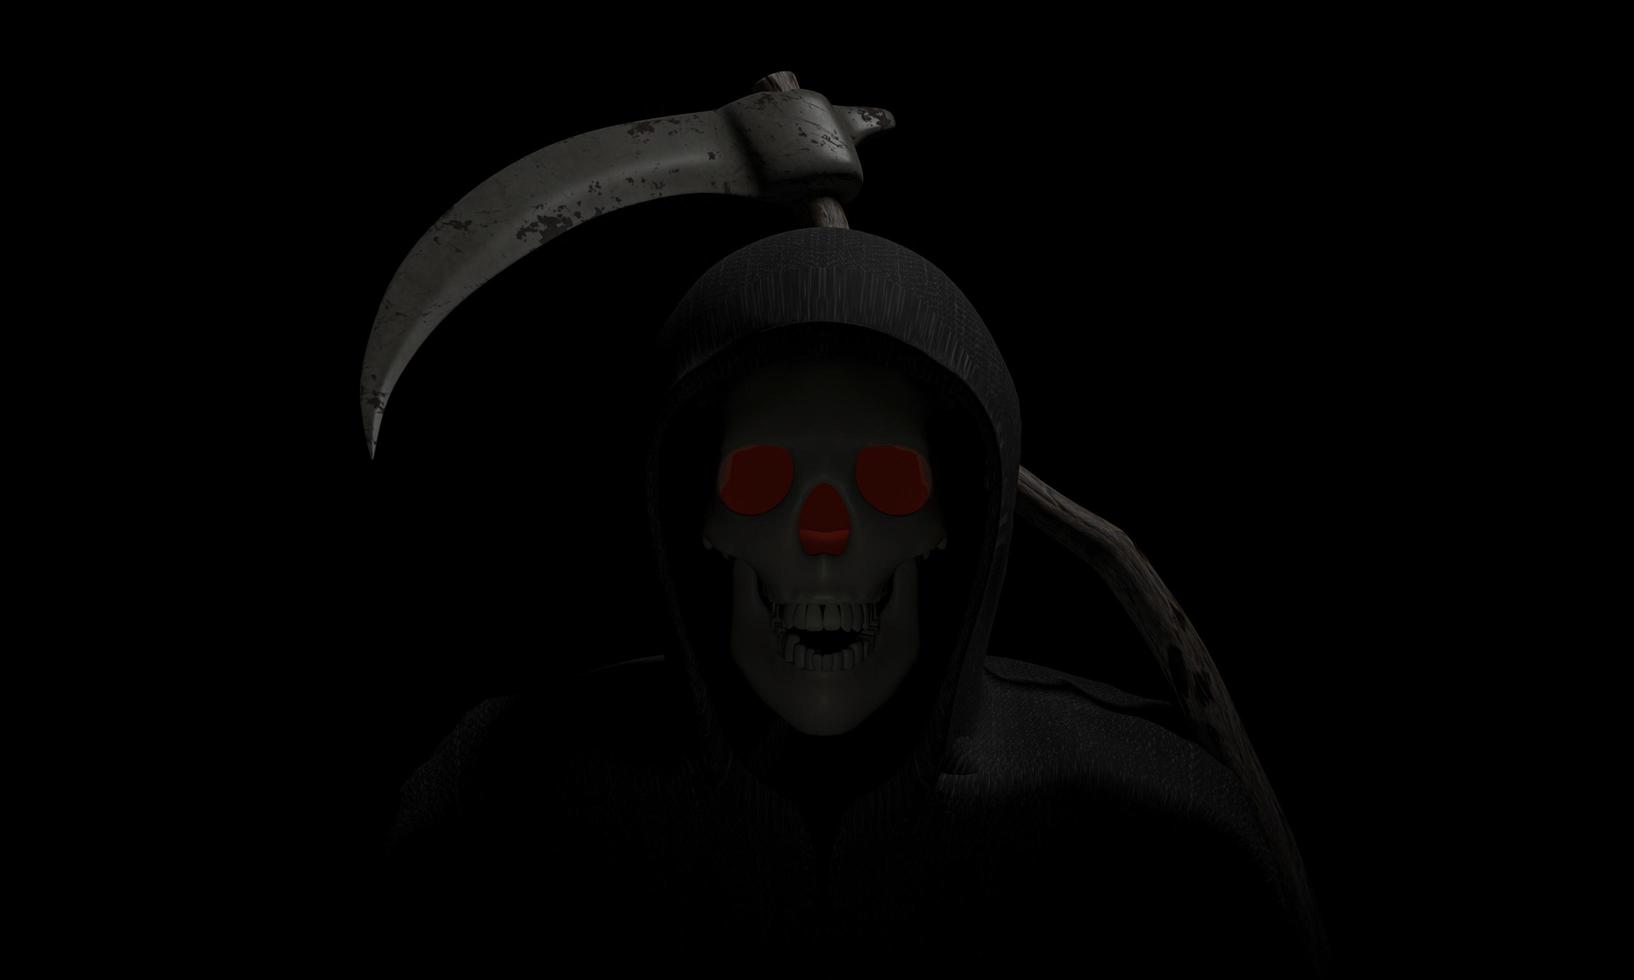 der Schädel des Todesgottes, ein schwarzer Umhang mit Kapuze. Sichel, Metall, langer Holzgriff, die Waffe des Todesgottes 3D-Rendering foto